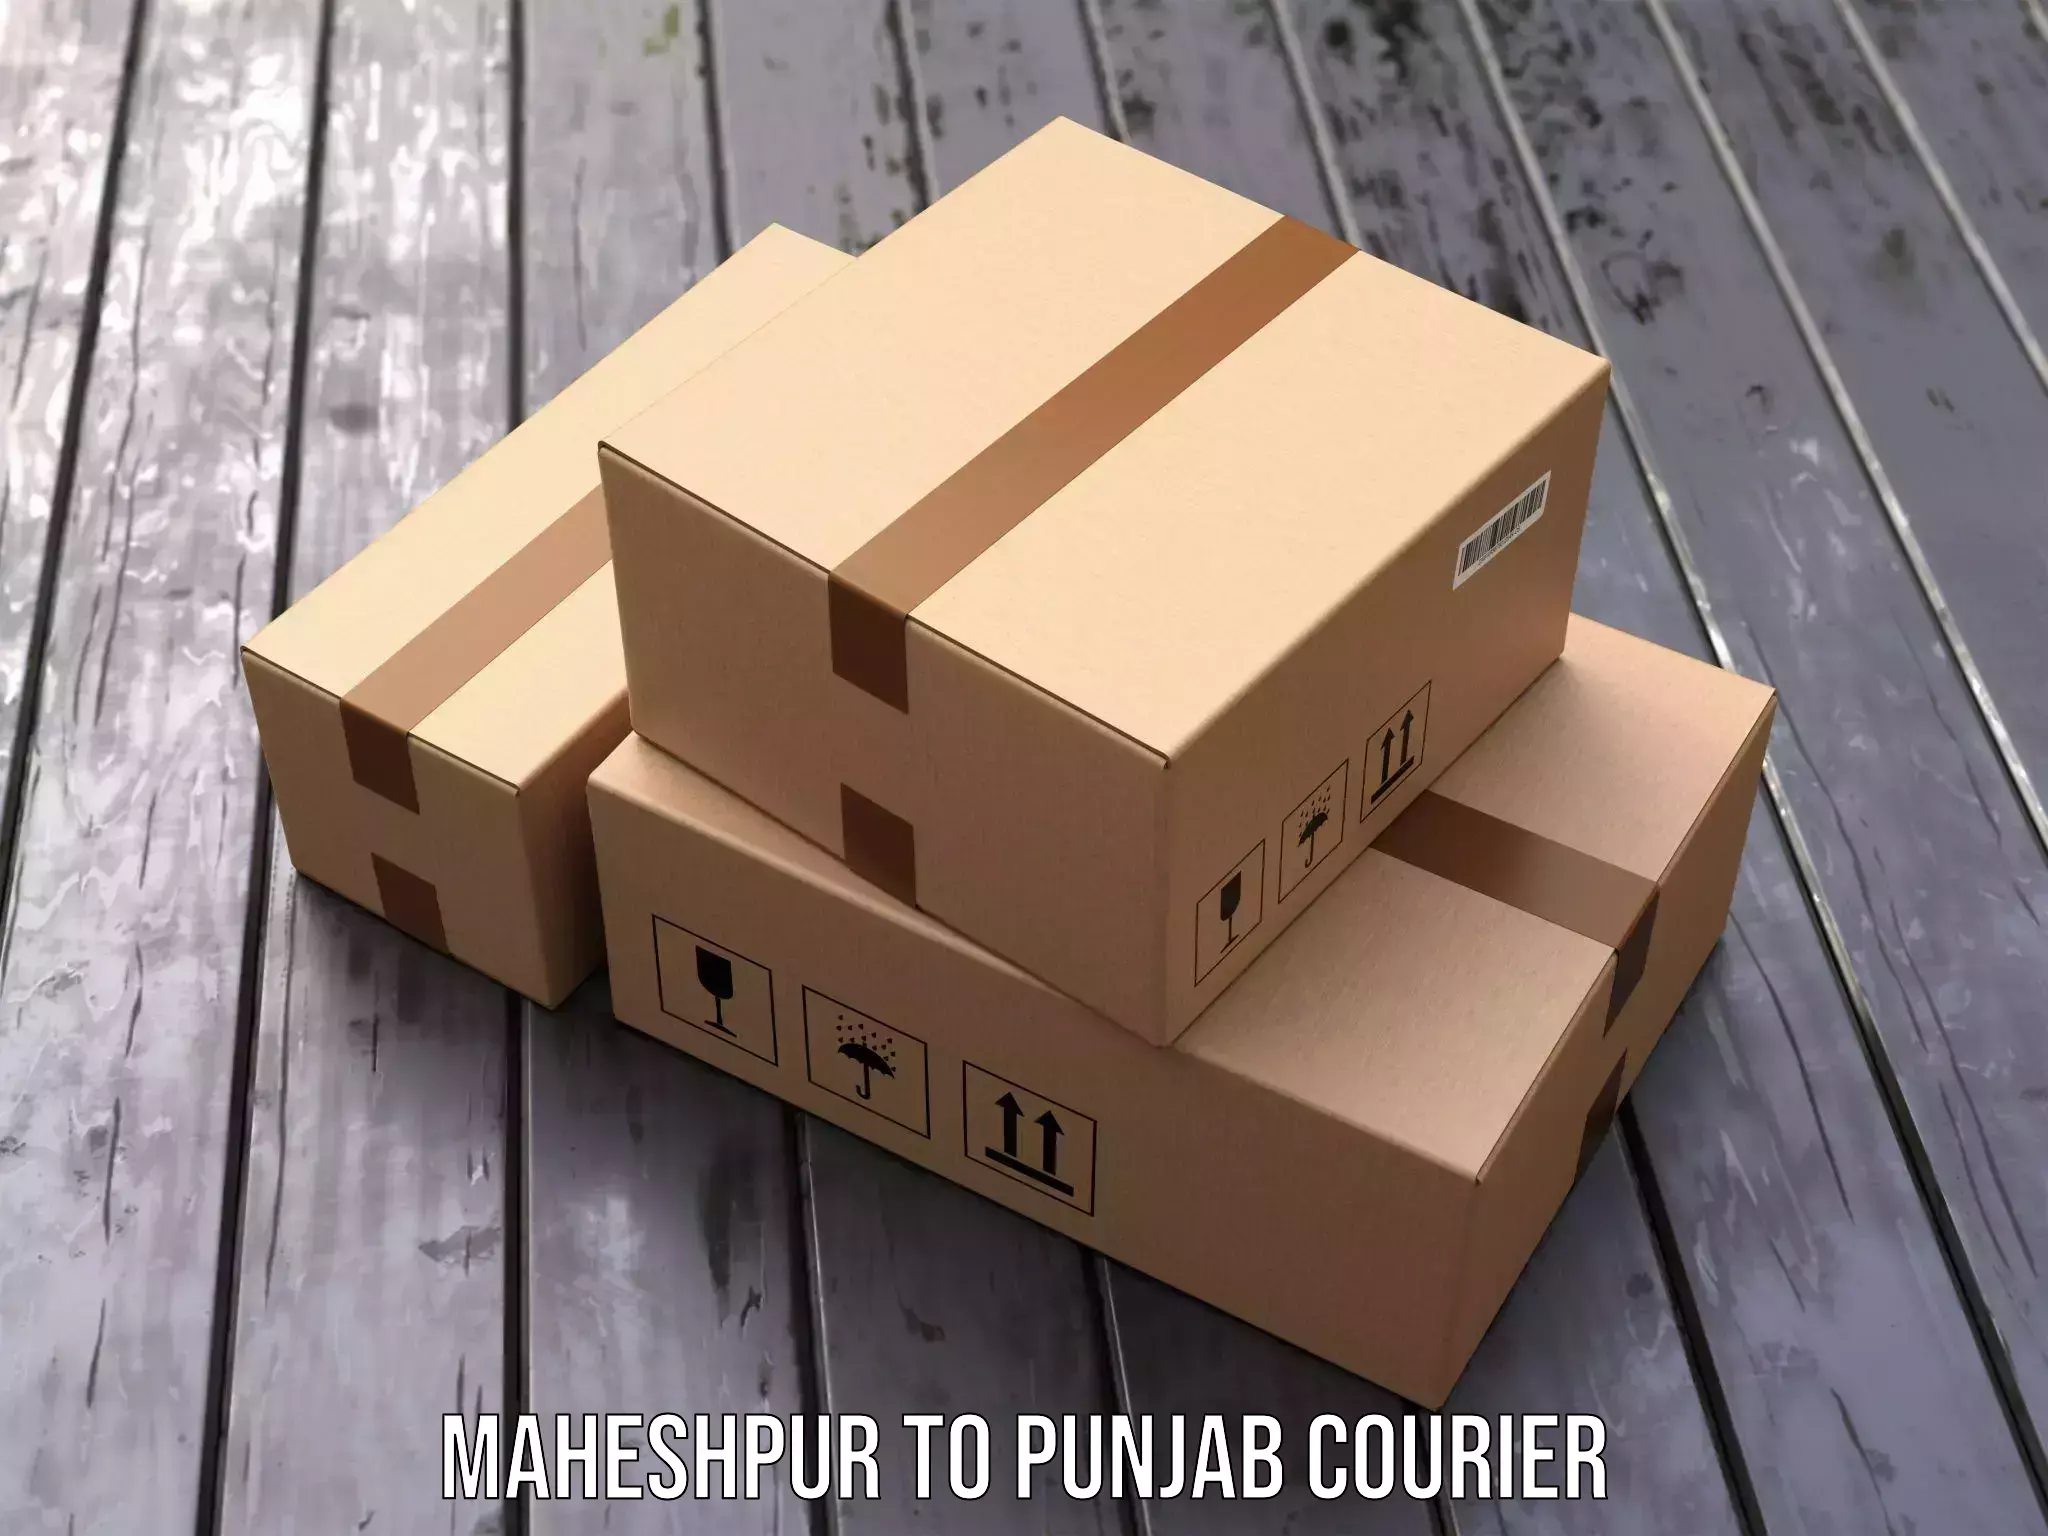 Expedited shipping methods Maheshpur to Punjab